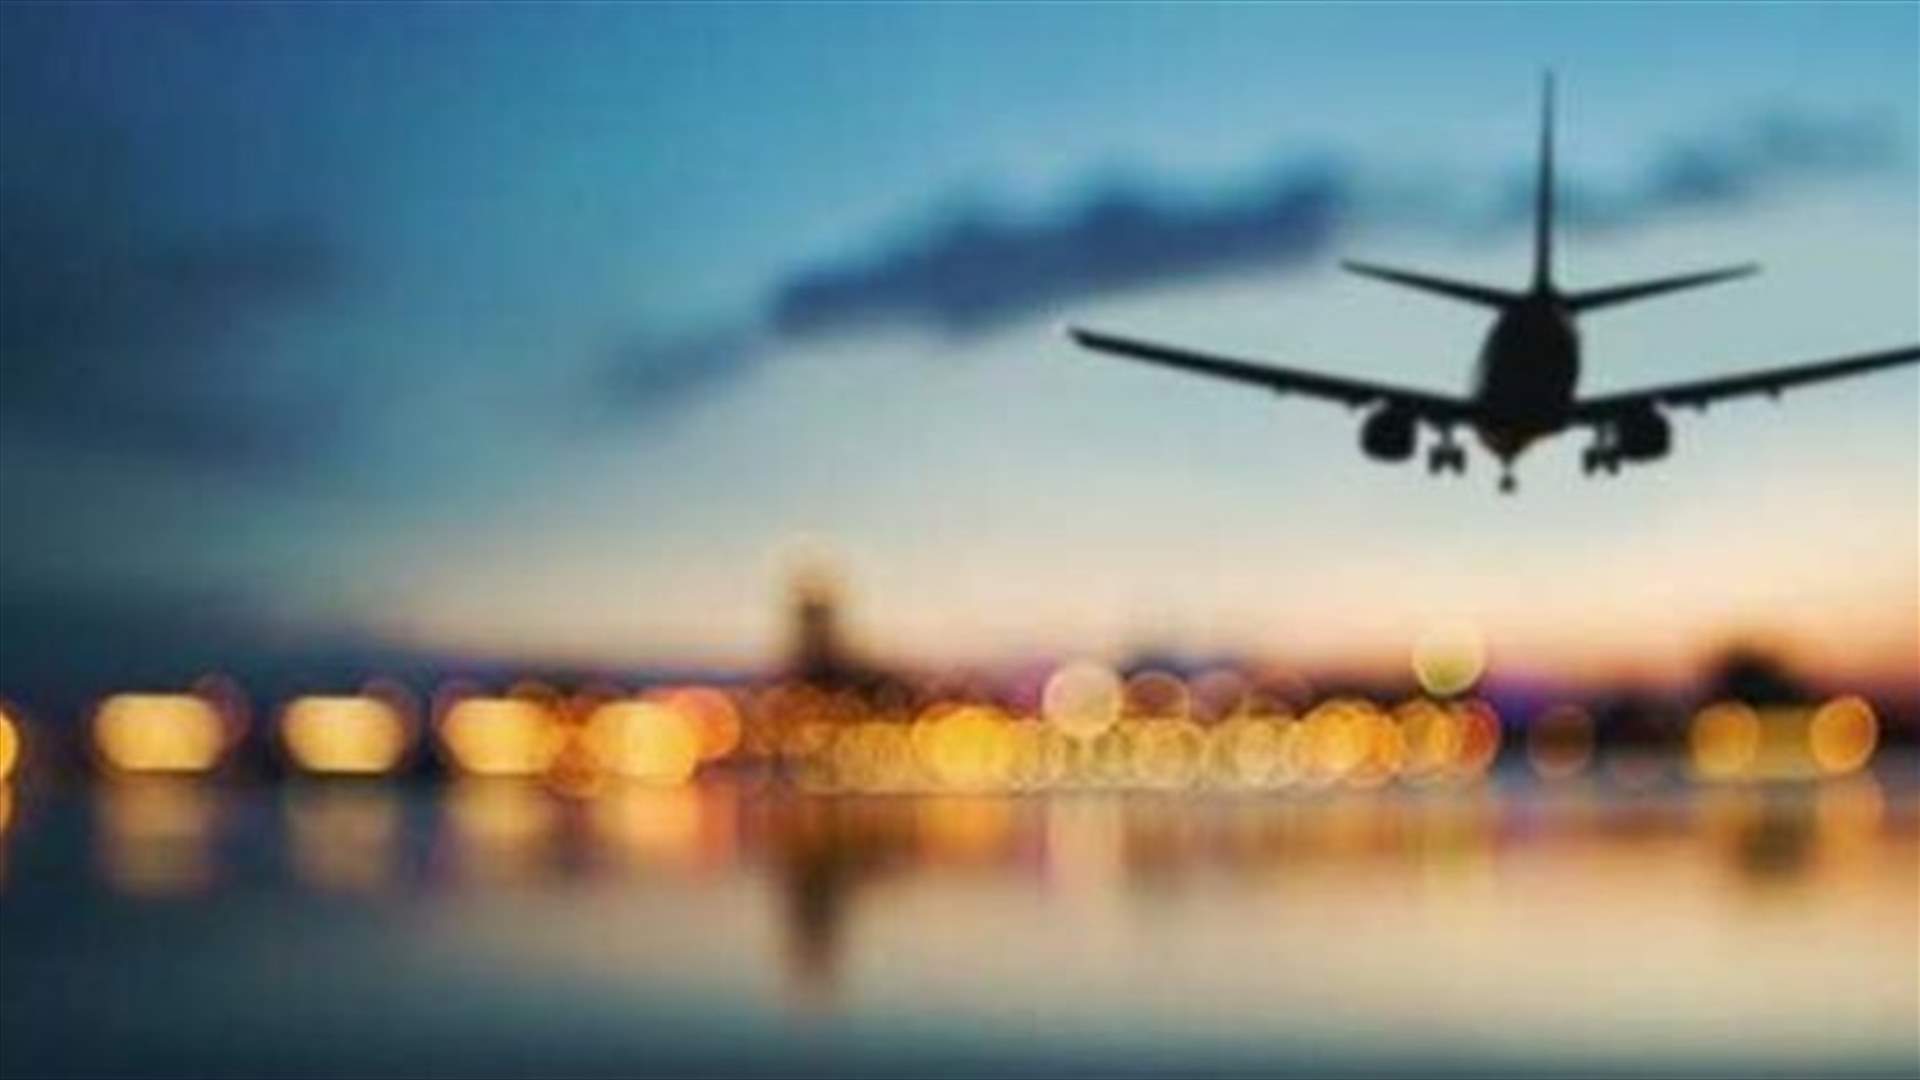 لبنانيون عالقون في تركيا بسبب شركة سفريات... ونقابة أصحاب مكاتب السفر والسياحة تعلّق